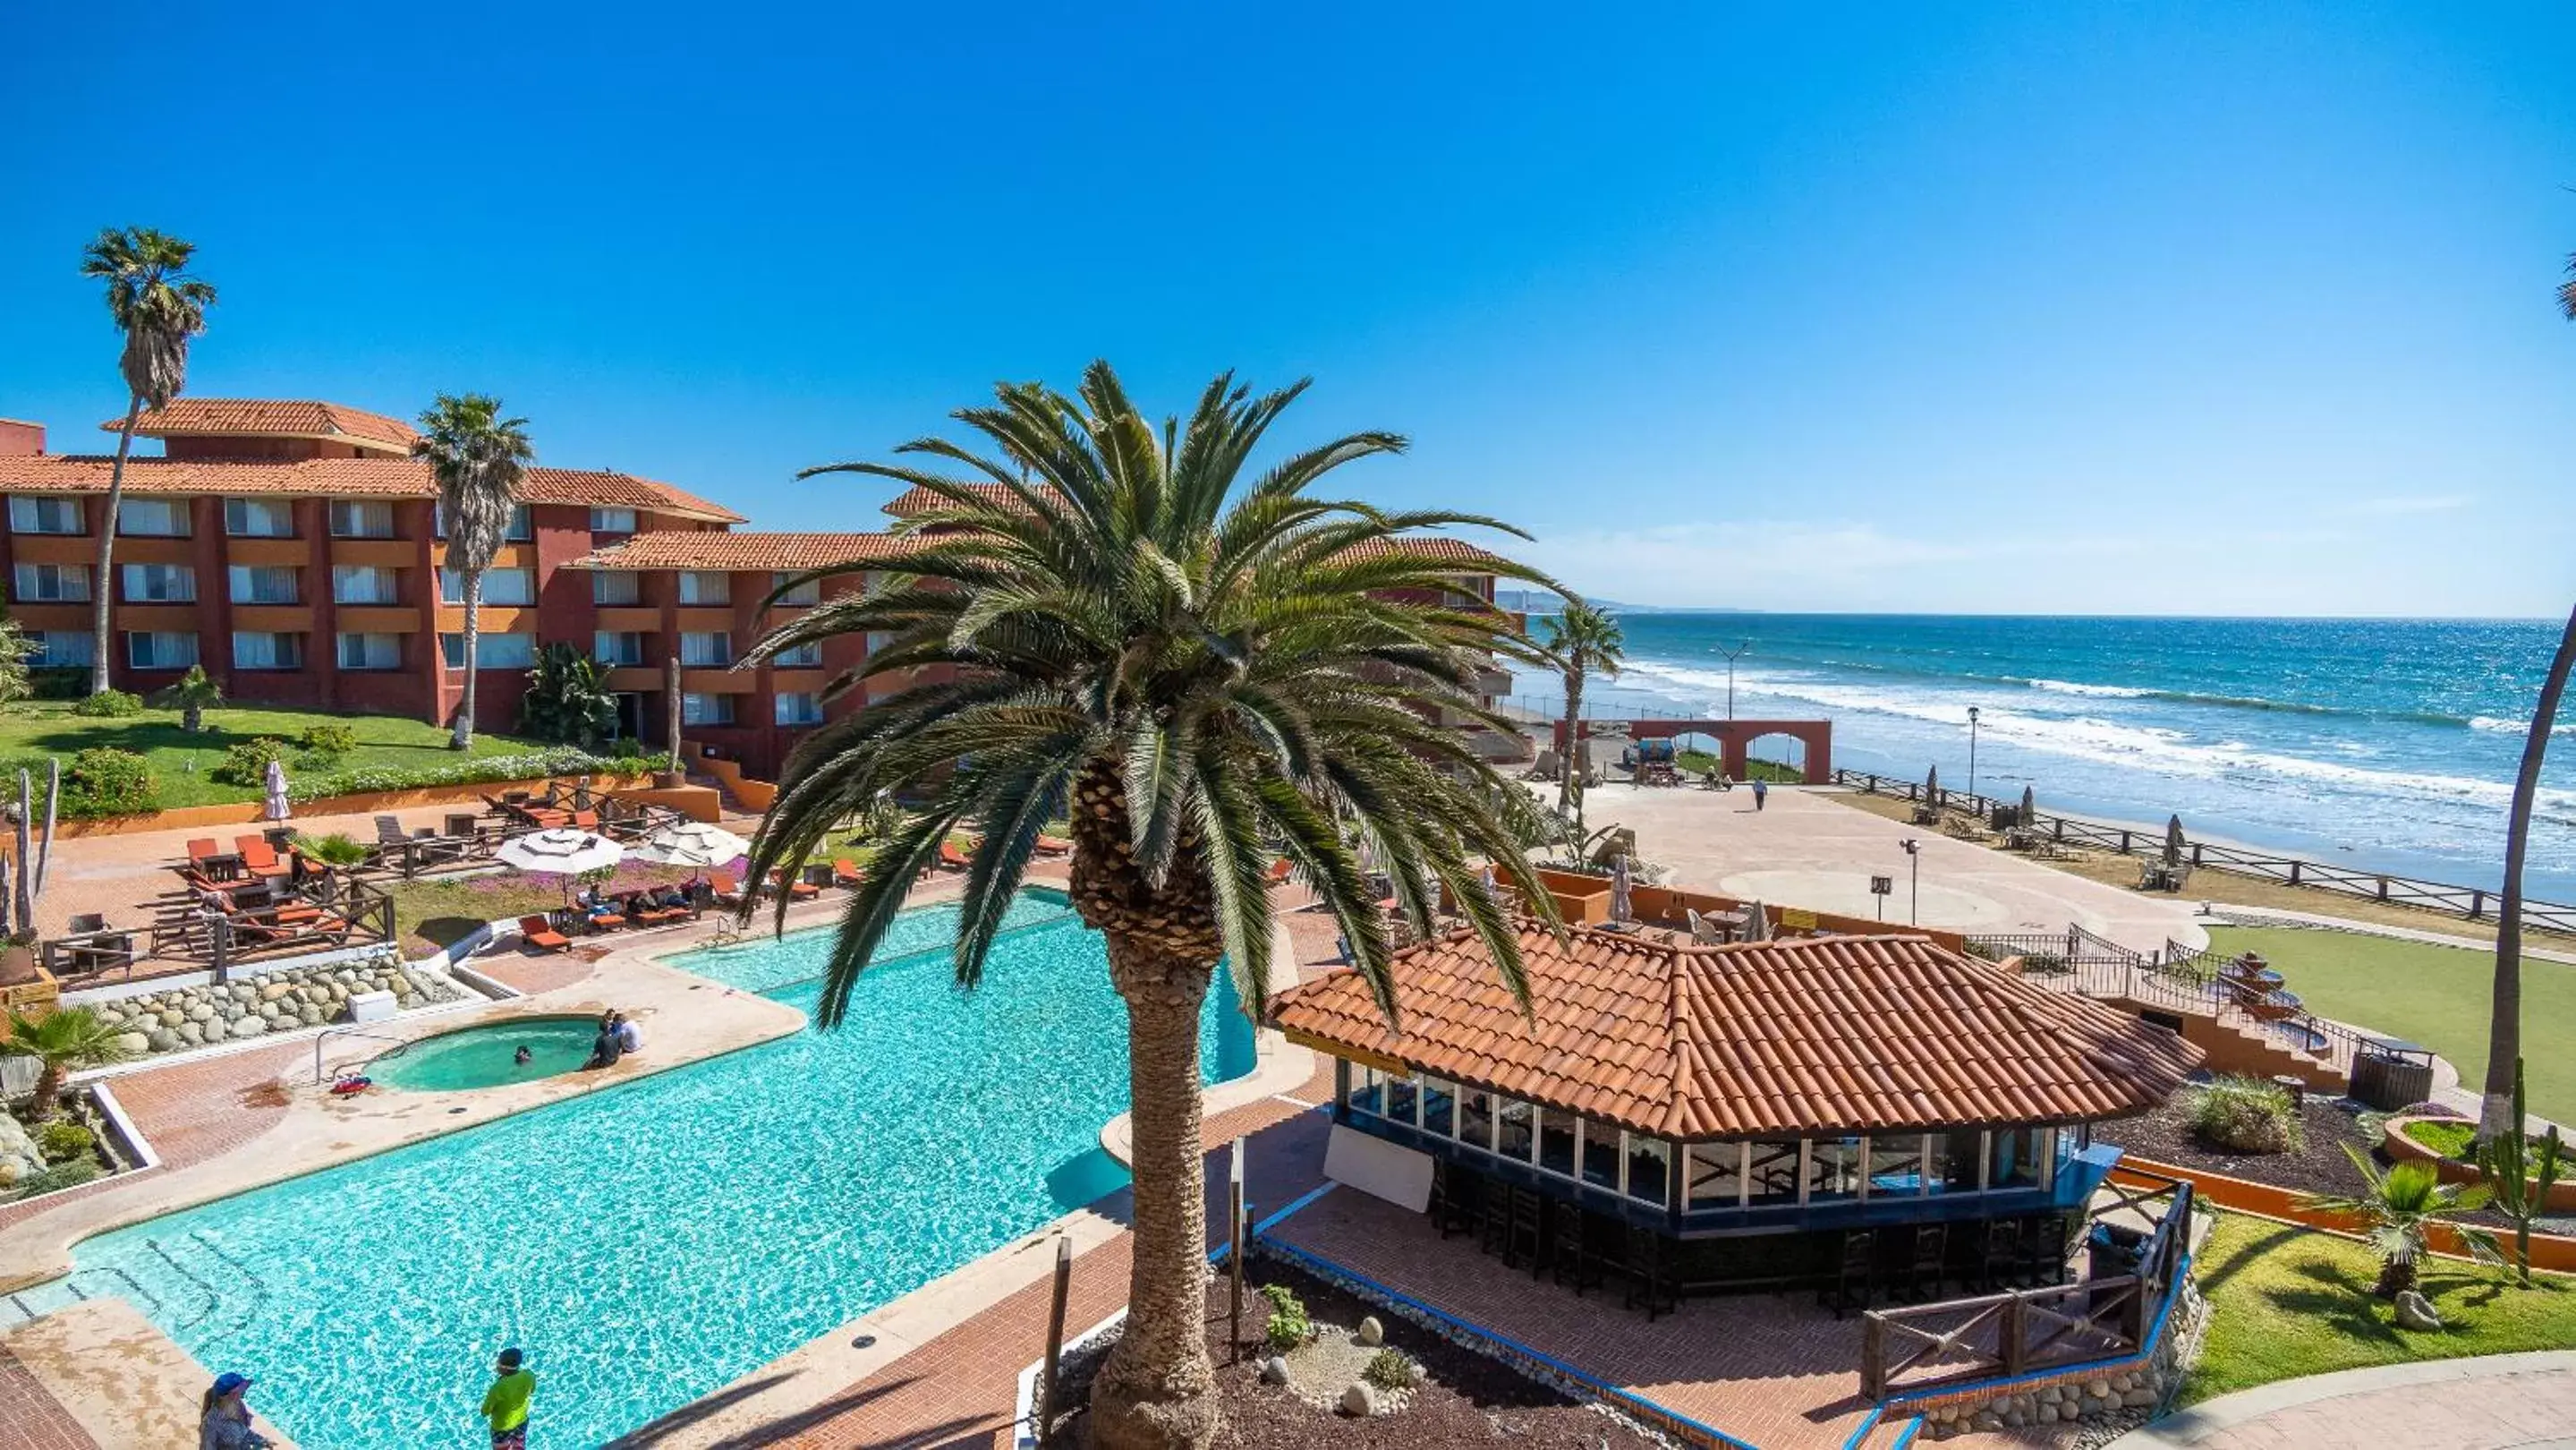 Property building, Pool View in Puerto Nuevo Baja Hotel & Villas